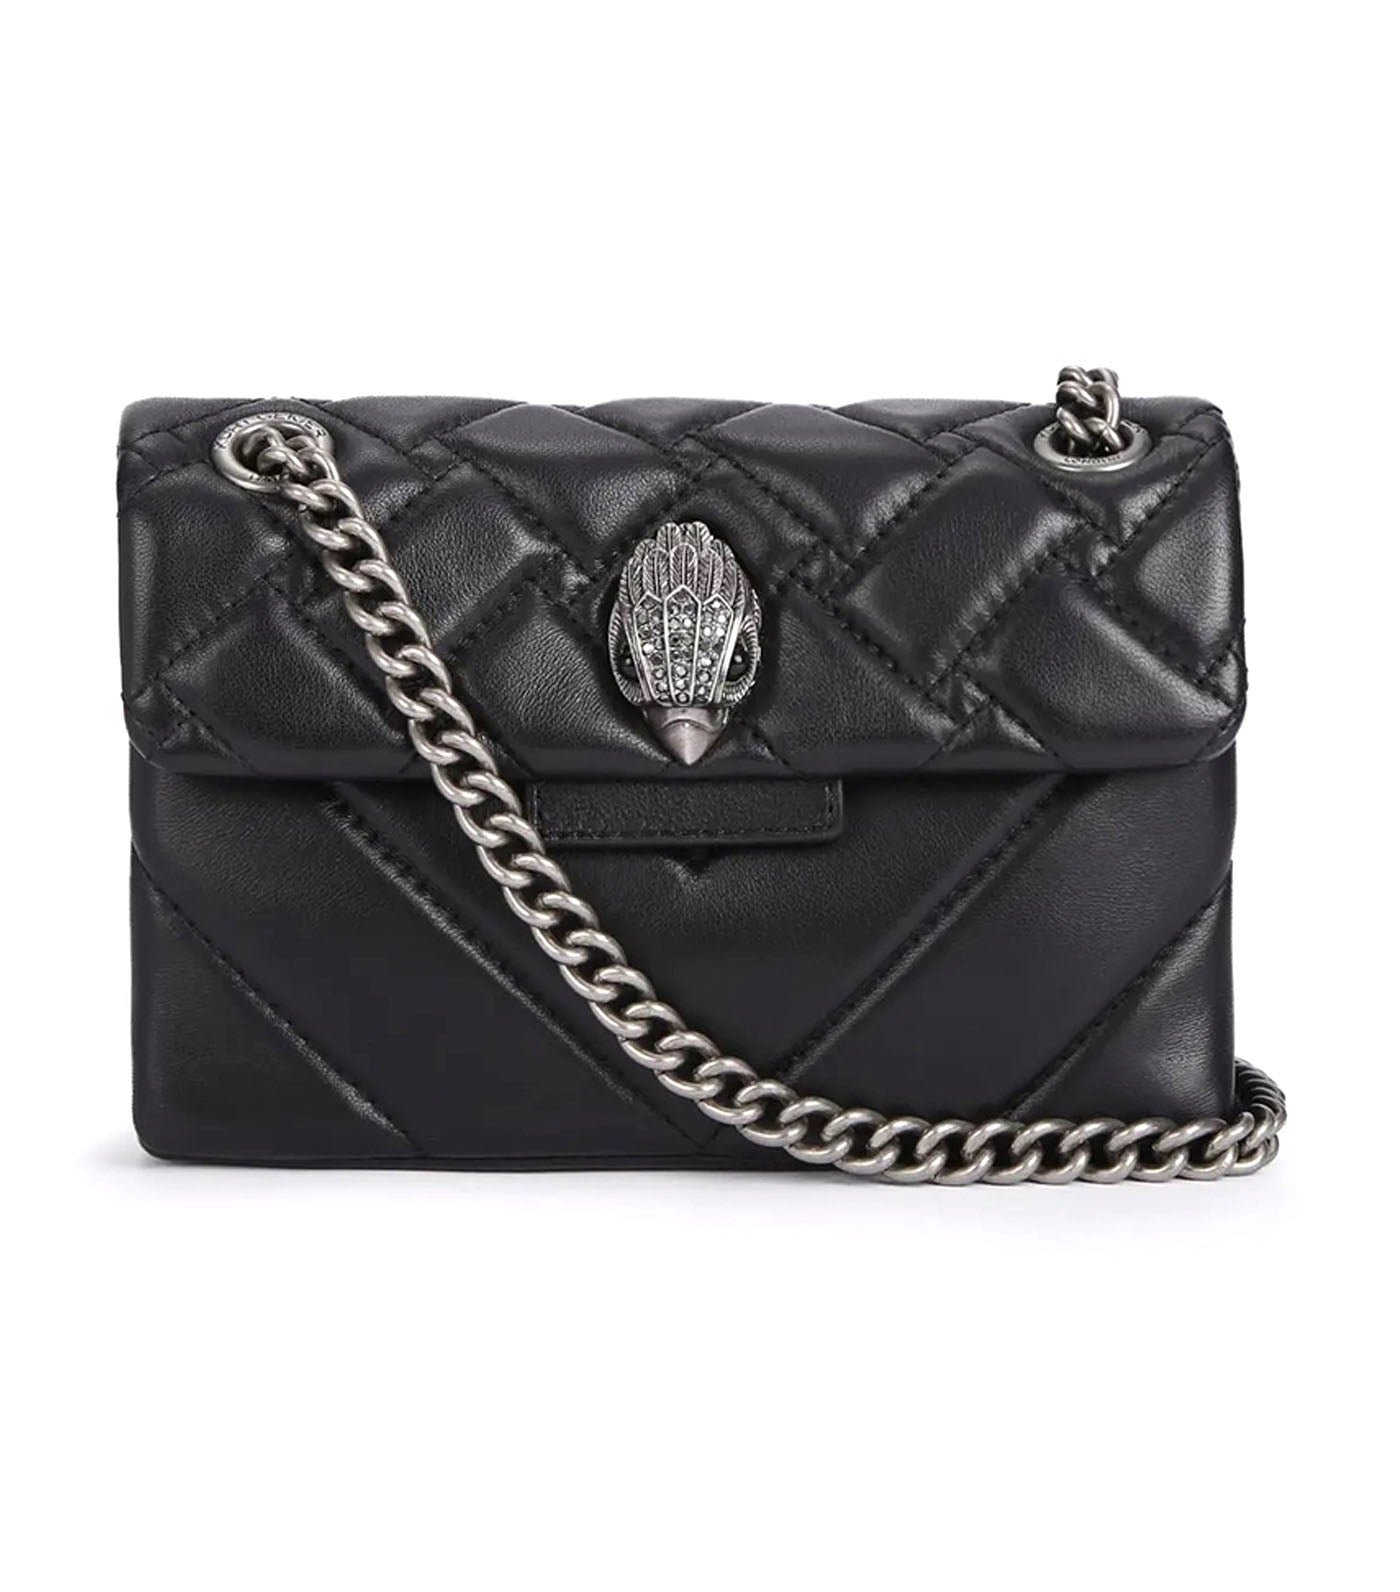 Leather Mini Kensington Bag Black